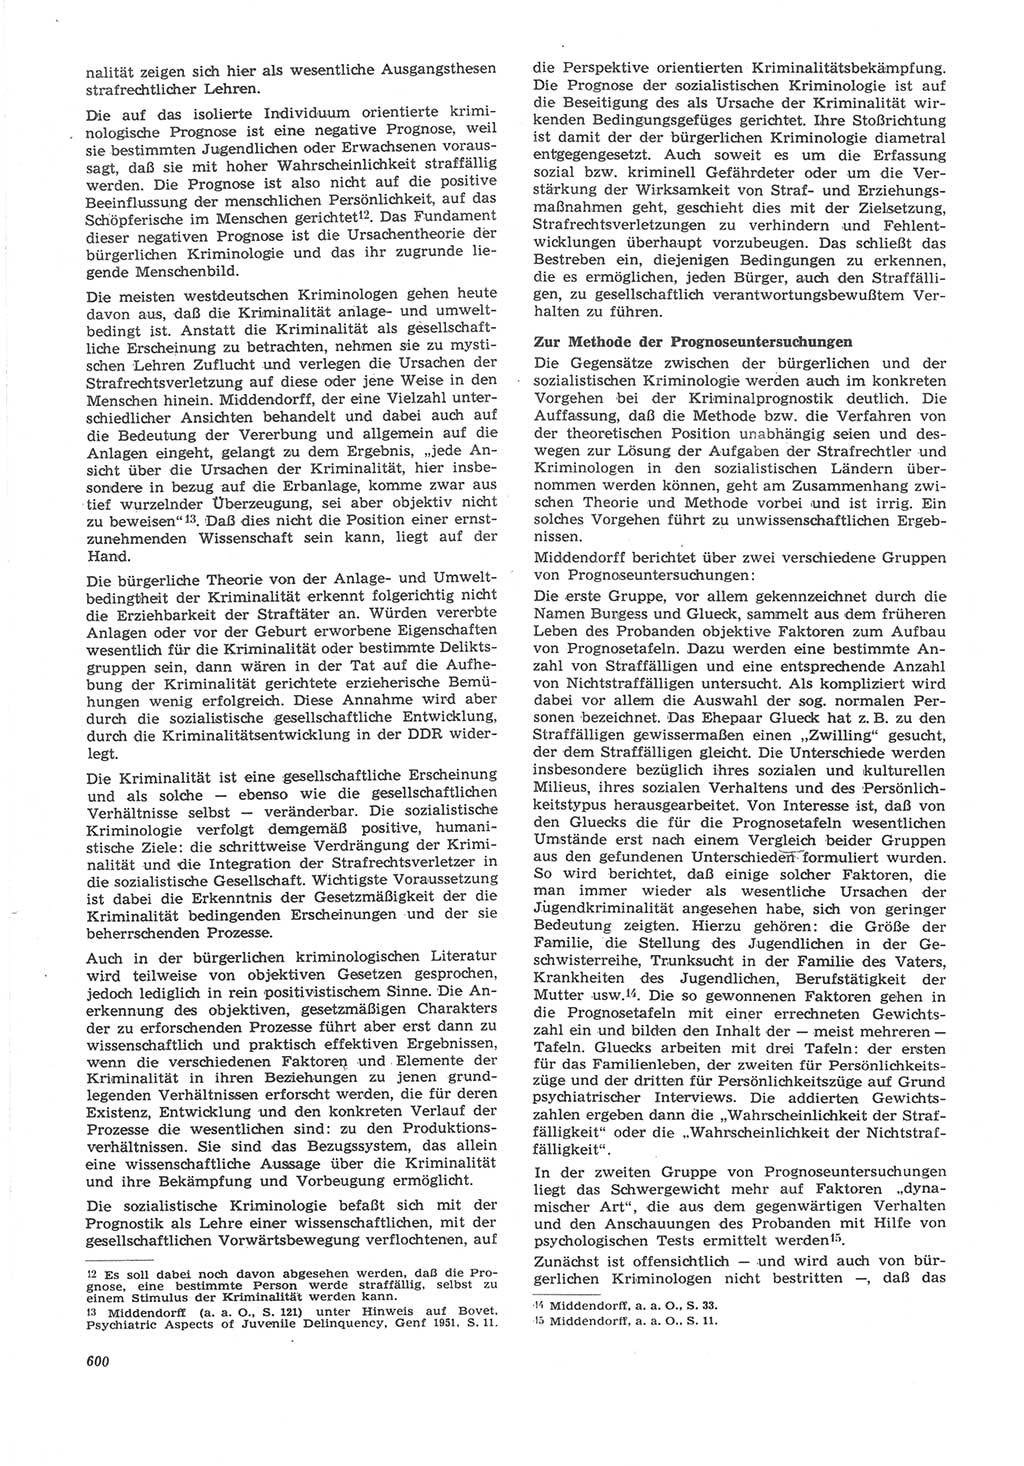 Neue Justiz (NJ), Zeitschrift für Recht und Rechtswissenschaft [Deutsche Demokratische Republik (DDR)], 22. Jahrgang 1968, Seite 600 (NJ DDR 1968, S. 600)